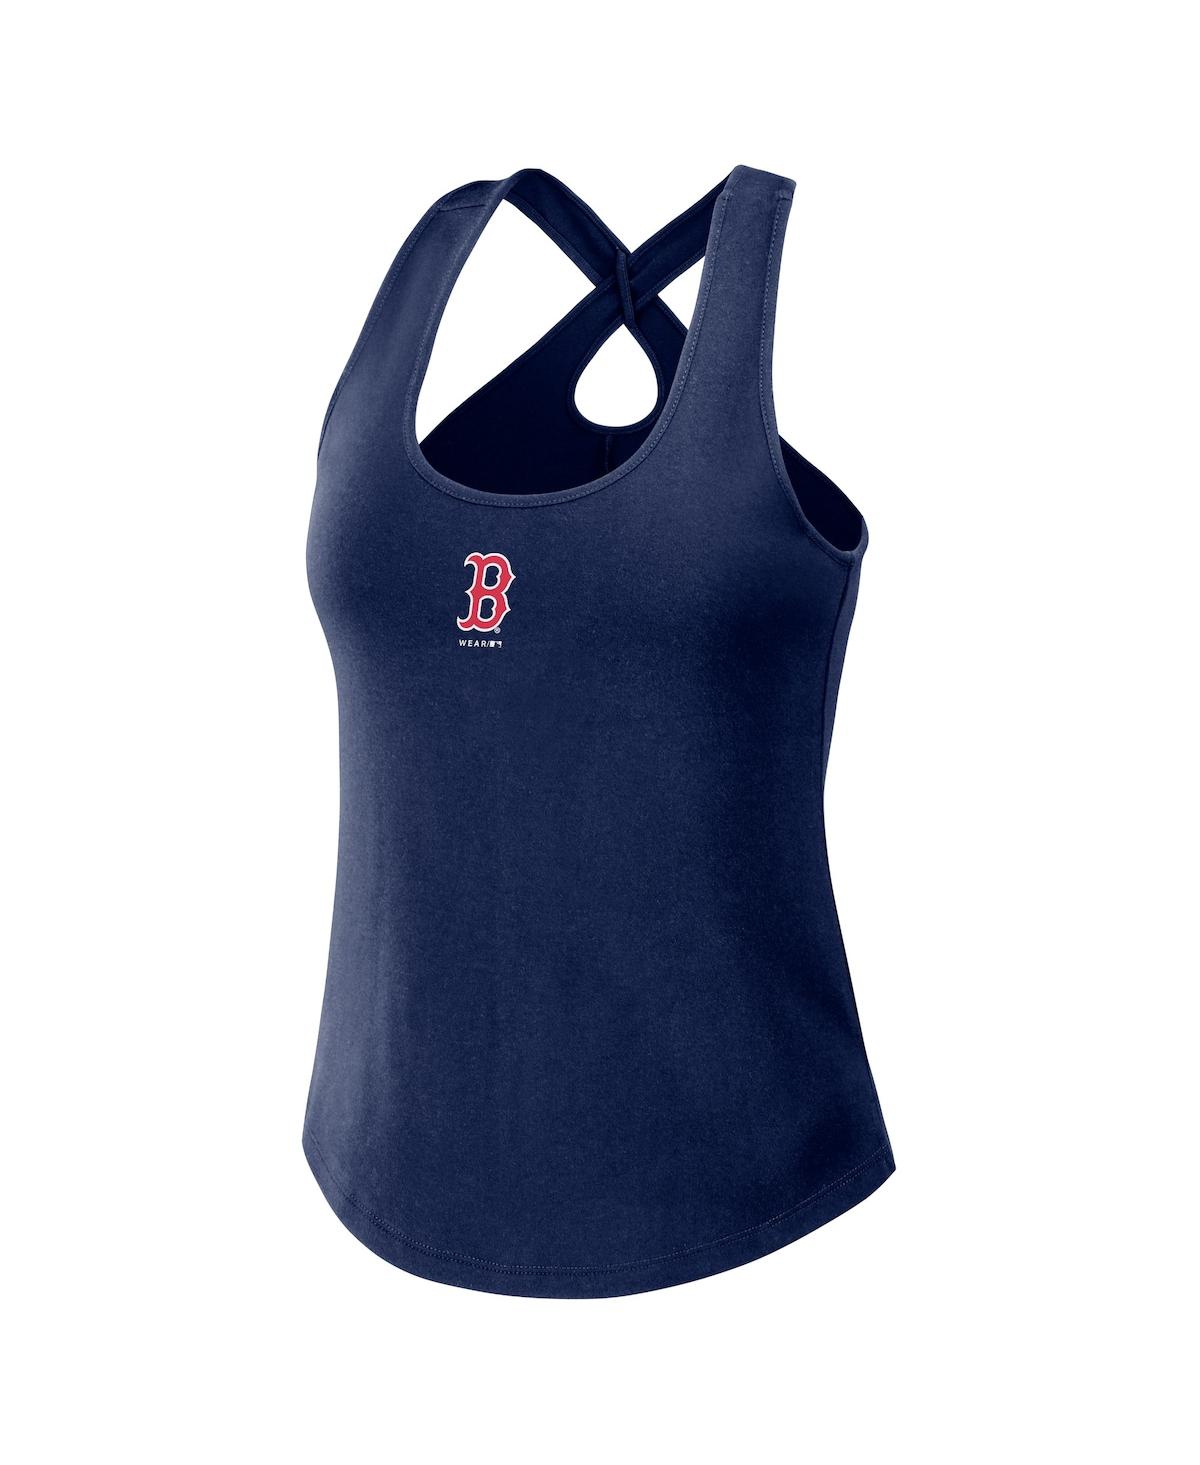 Shop Wear By Erin Andrews Women's  Navy Boston Red Sox Cross Back Tank Top